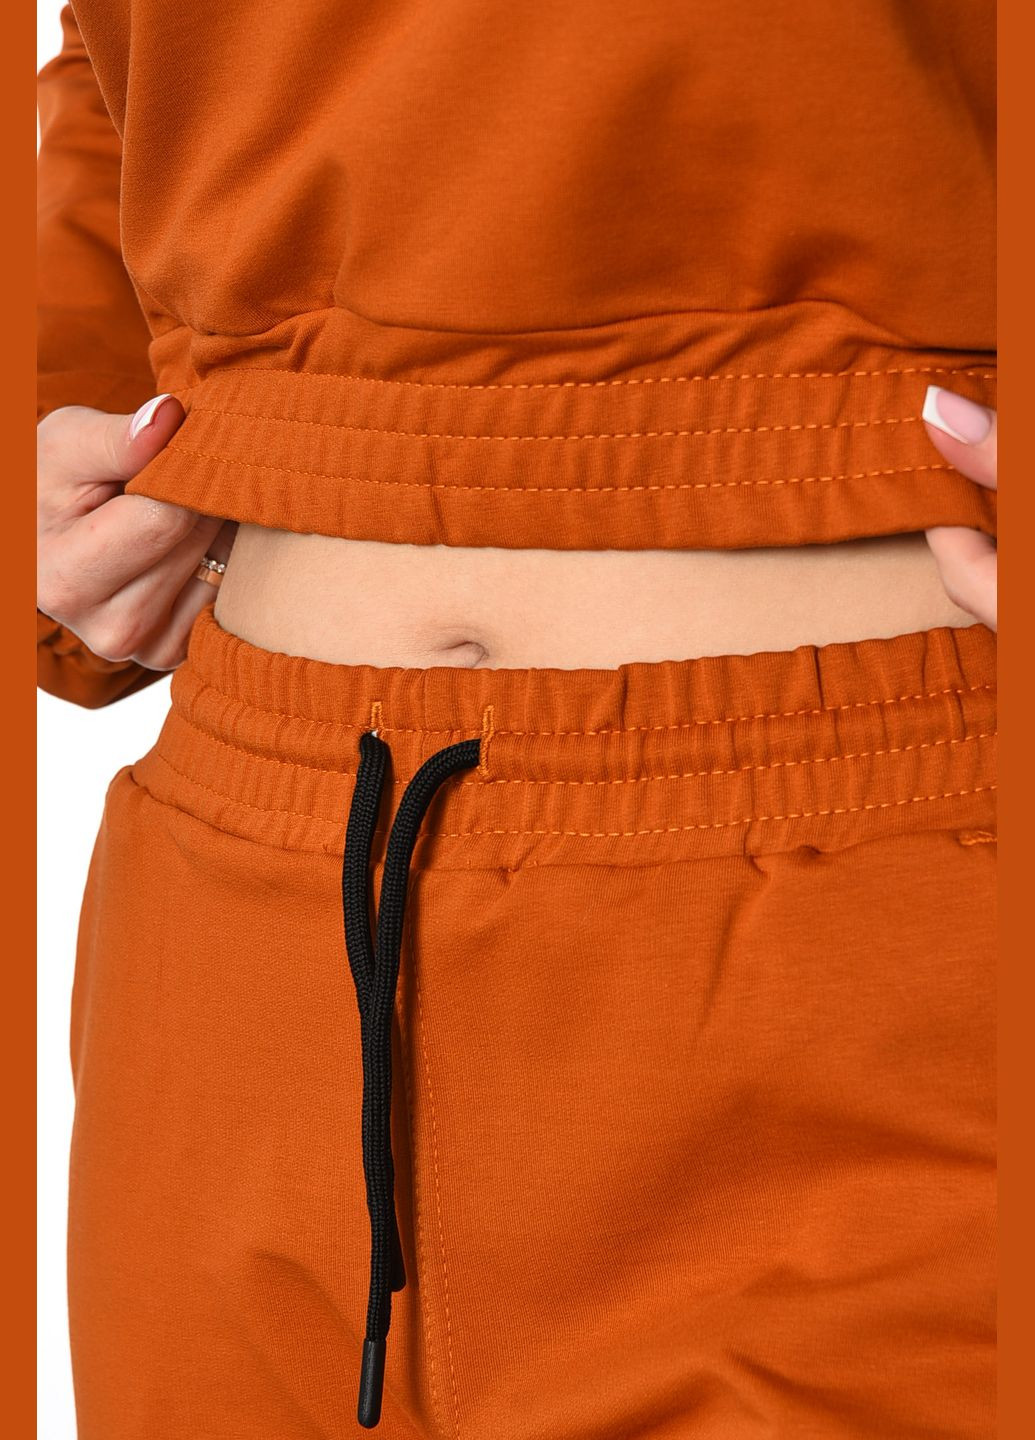 Спортивный костюм женский оранжевого цвета Let's Shop (292755084)